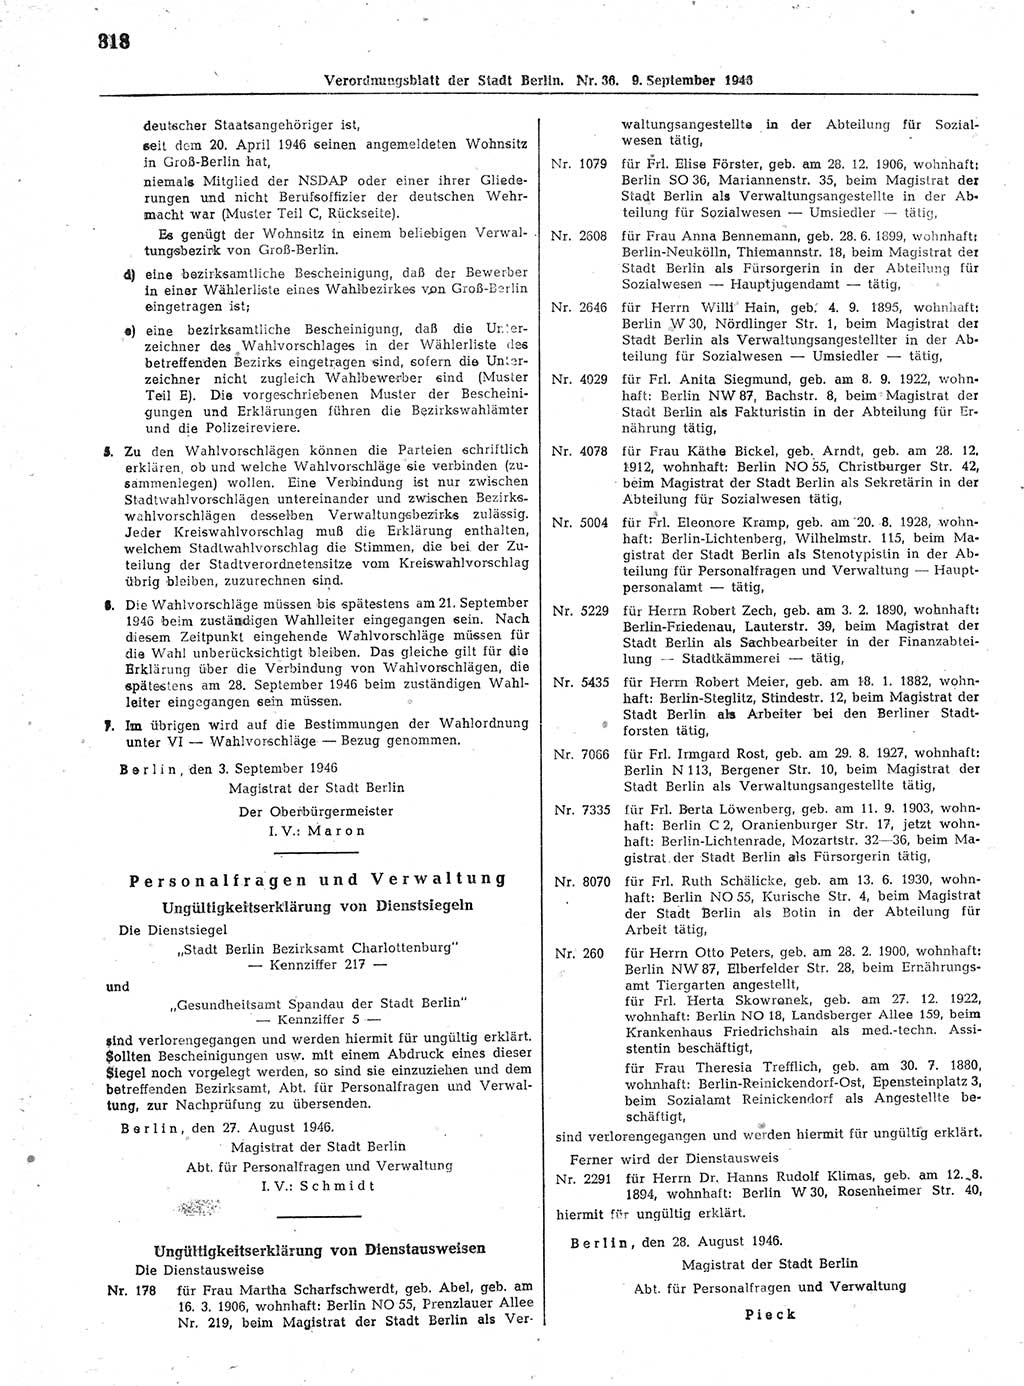 Verordnungsblatt (VOBl.) der Stadt Berlin, für Groß-Berlin 1946, Seite 318 (VOBl. Bln. 1946, S. 318)